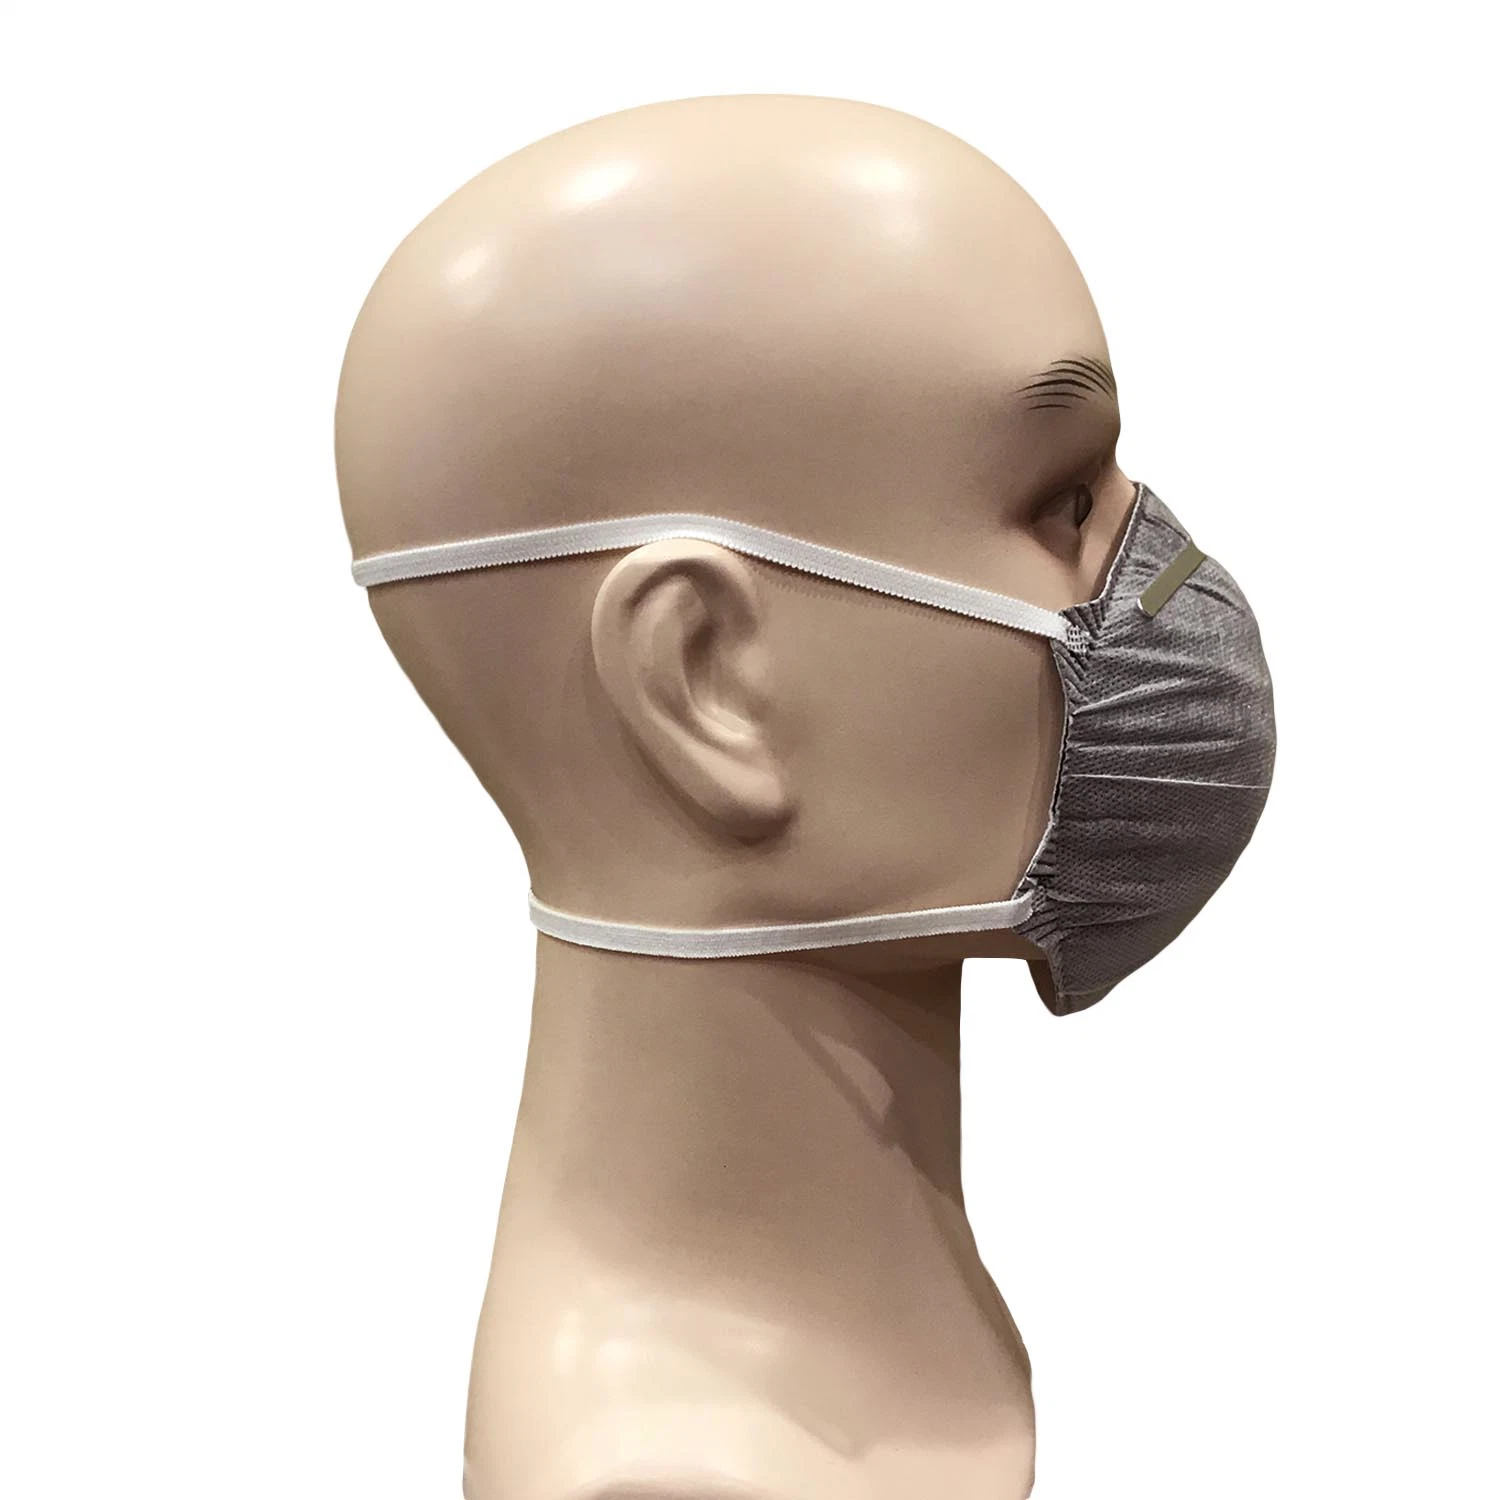 Masque jetable, masque anti-poussière, masque facial actif en carbone, masque de masque